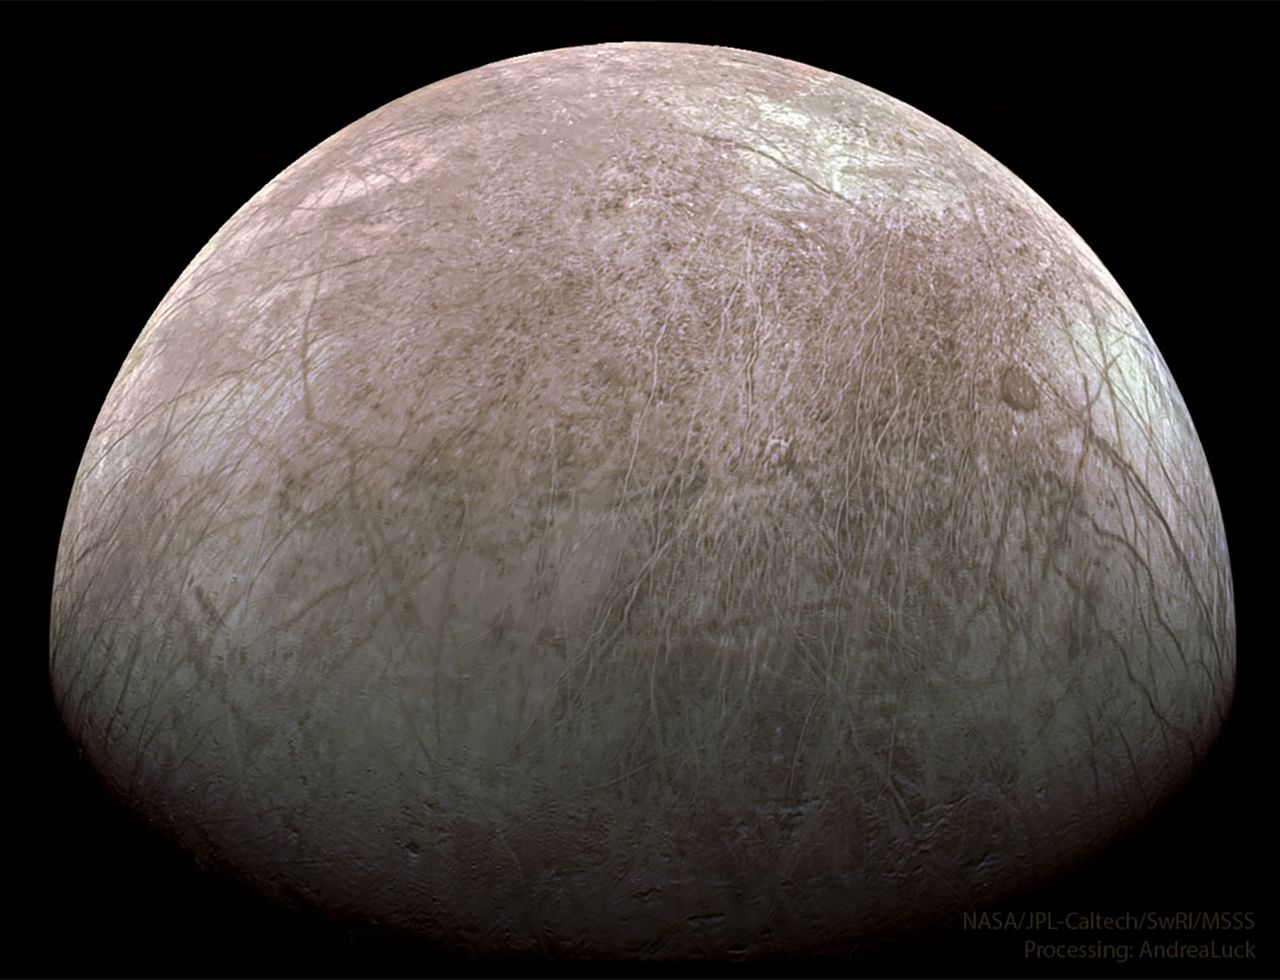 Europa to księżyc Jowisza, który miłośnikom "Gwiezdnych Wojen" może kojarzyć się z lodową planetą Hoth.